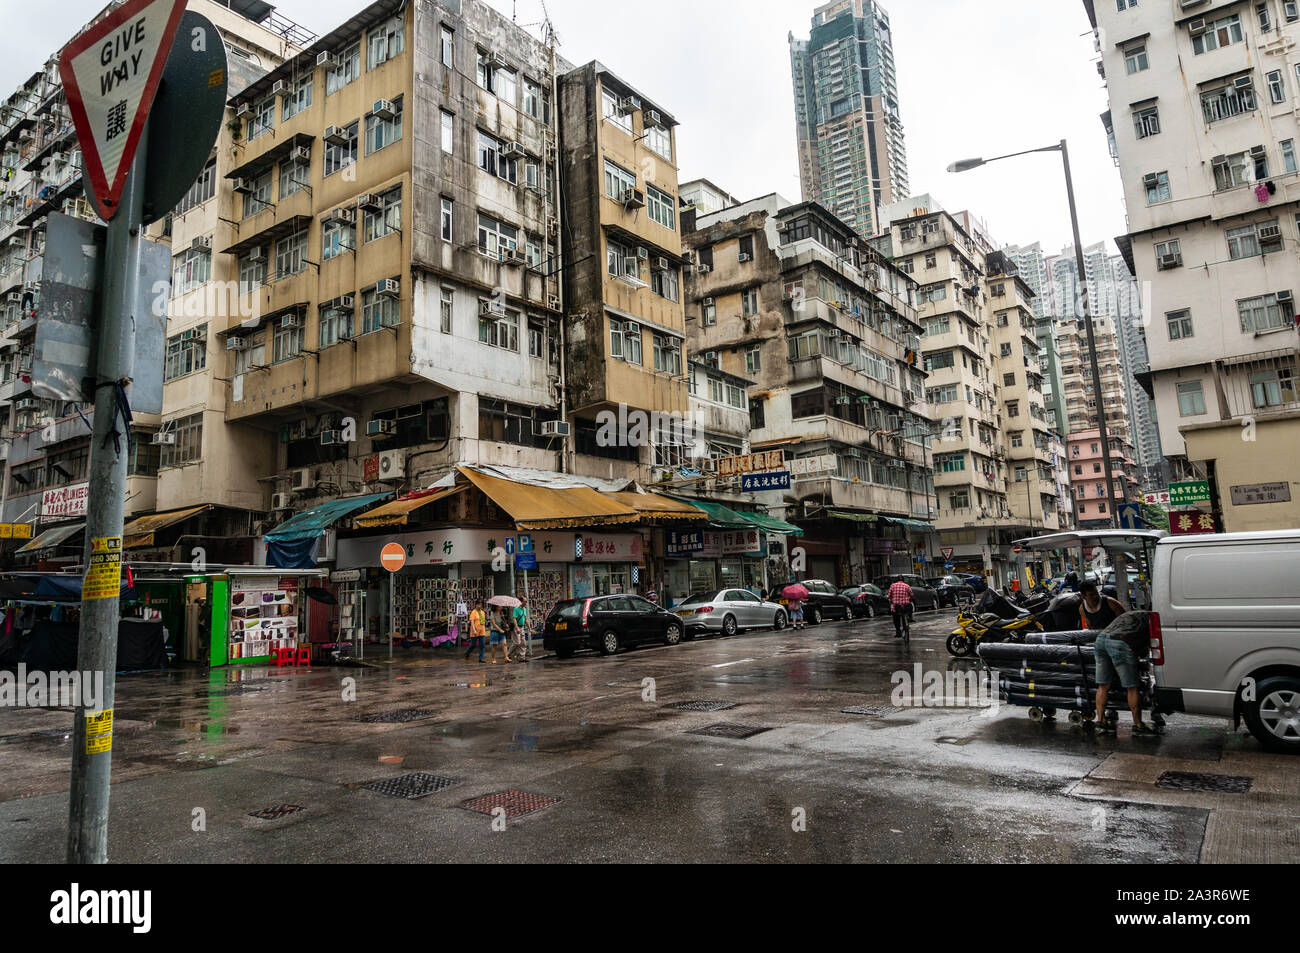 Slum area of Hong Kong, Sham Shui Po neighborhood in Hong Kong Stock Photo